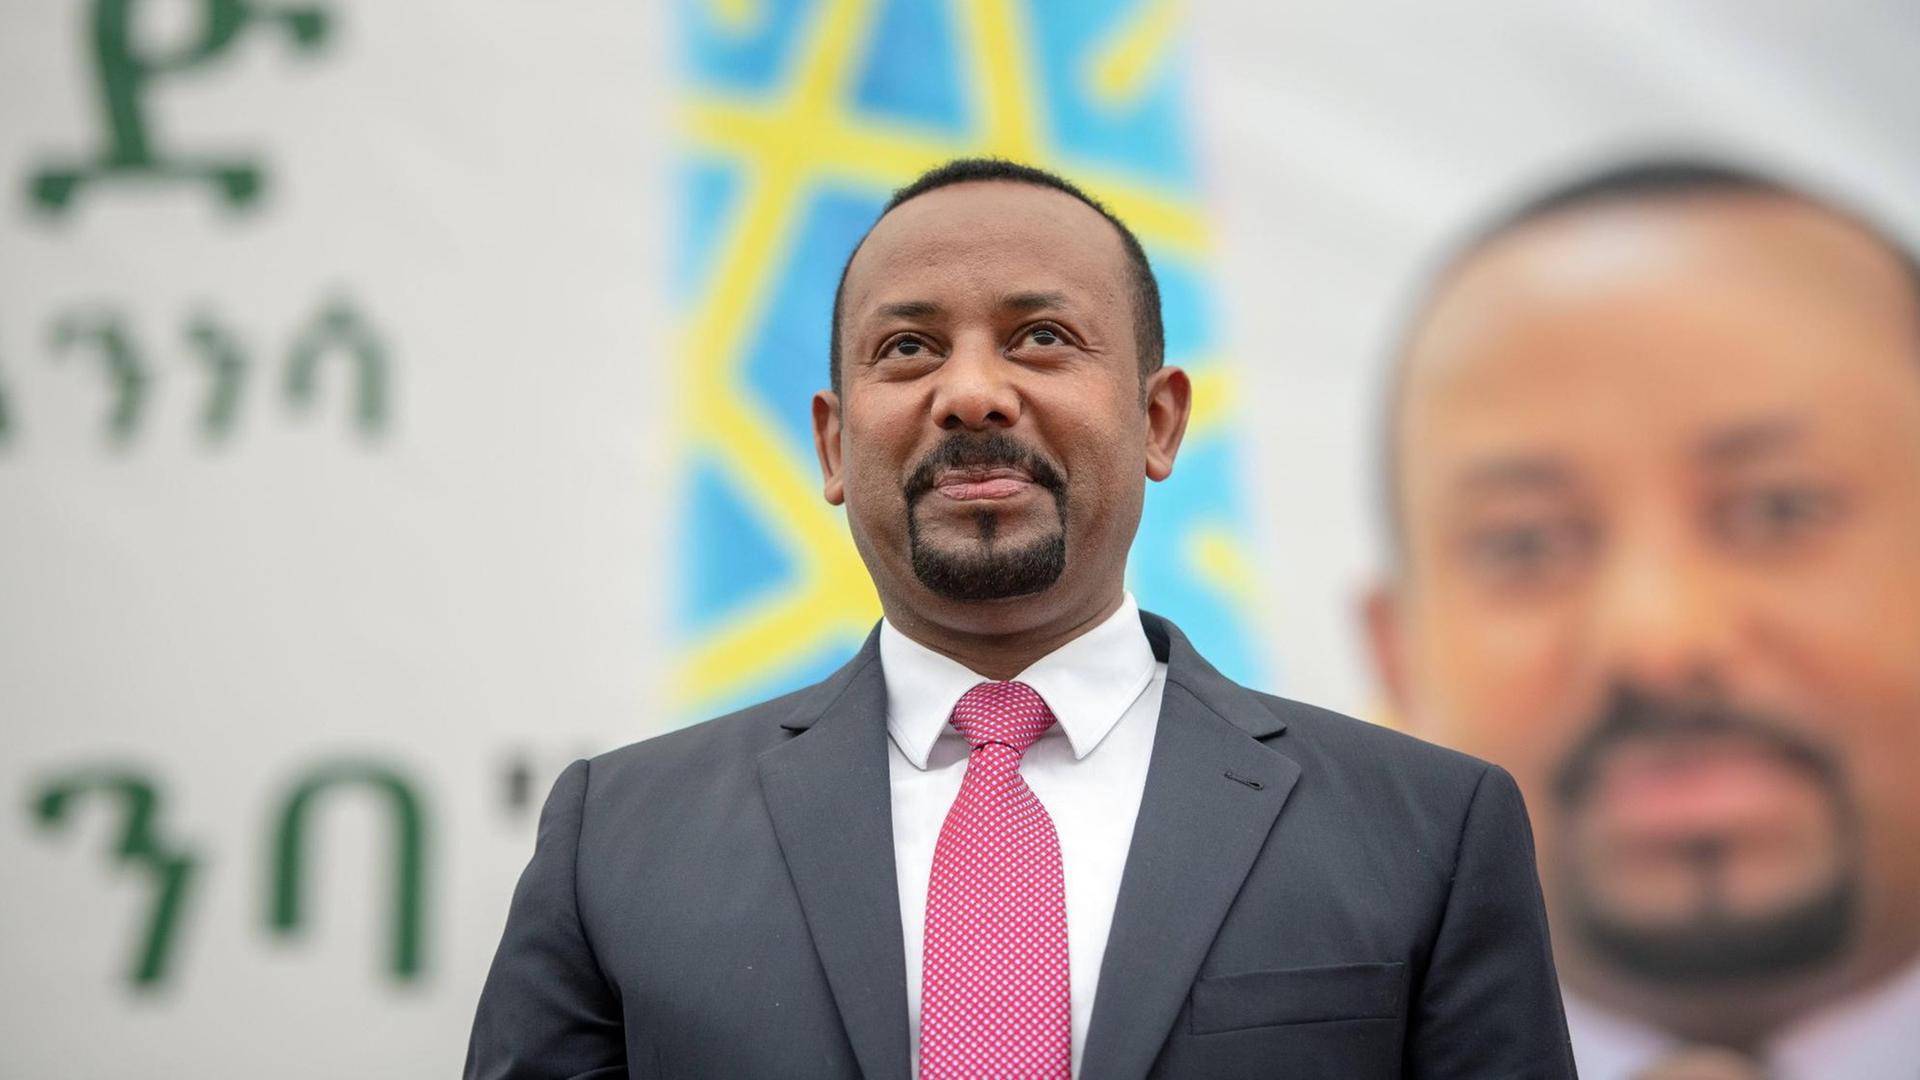 Das Foto zeigt den äthiopischen Regierungs-Chef. Er heißt Abiy Ahmed.